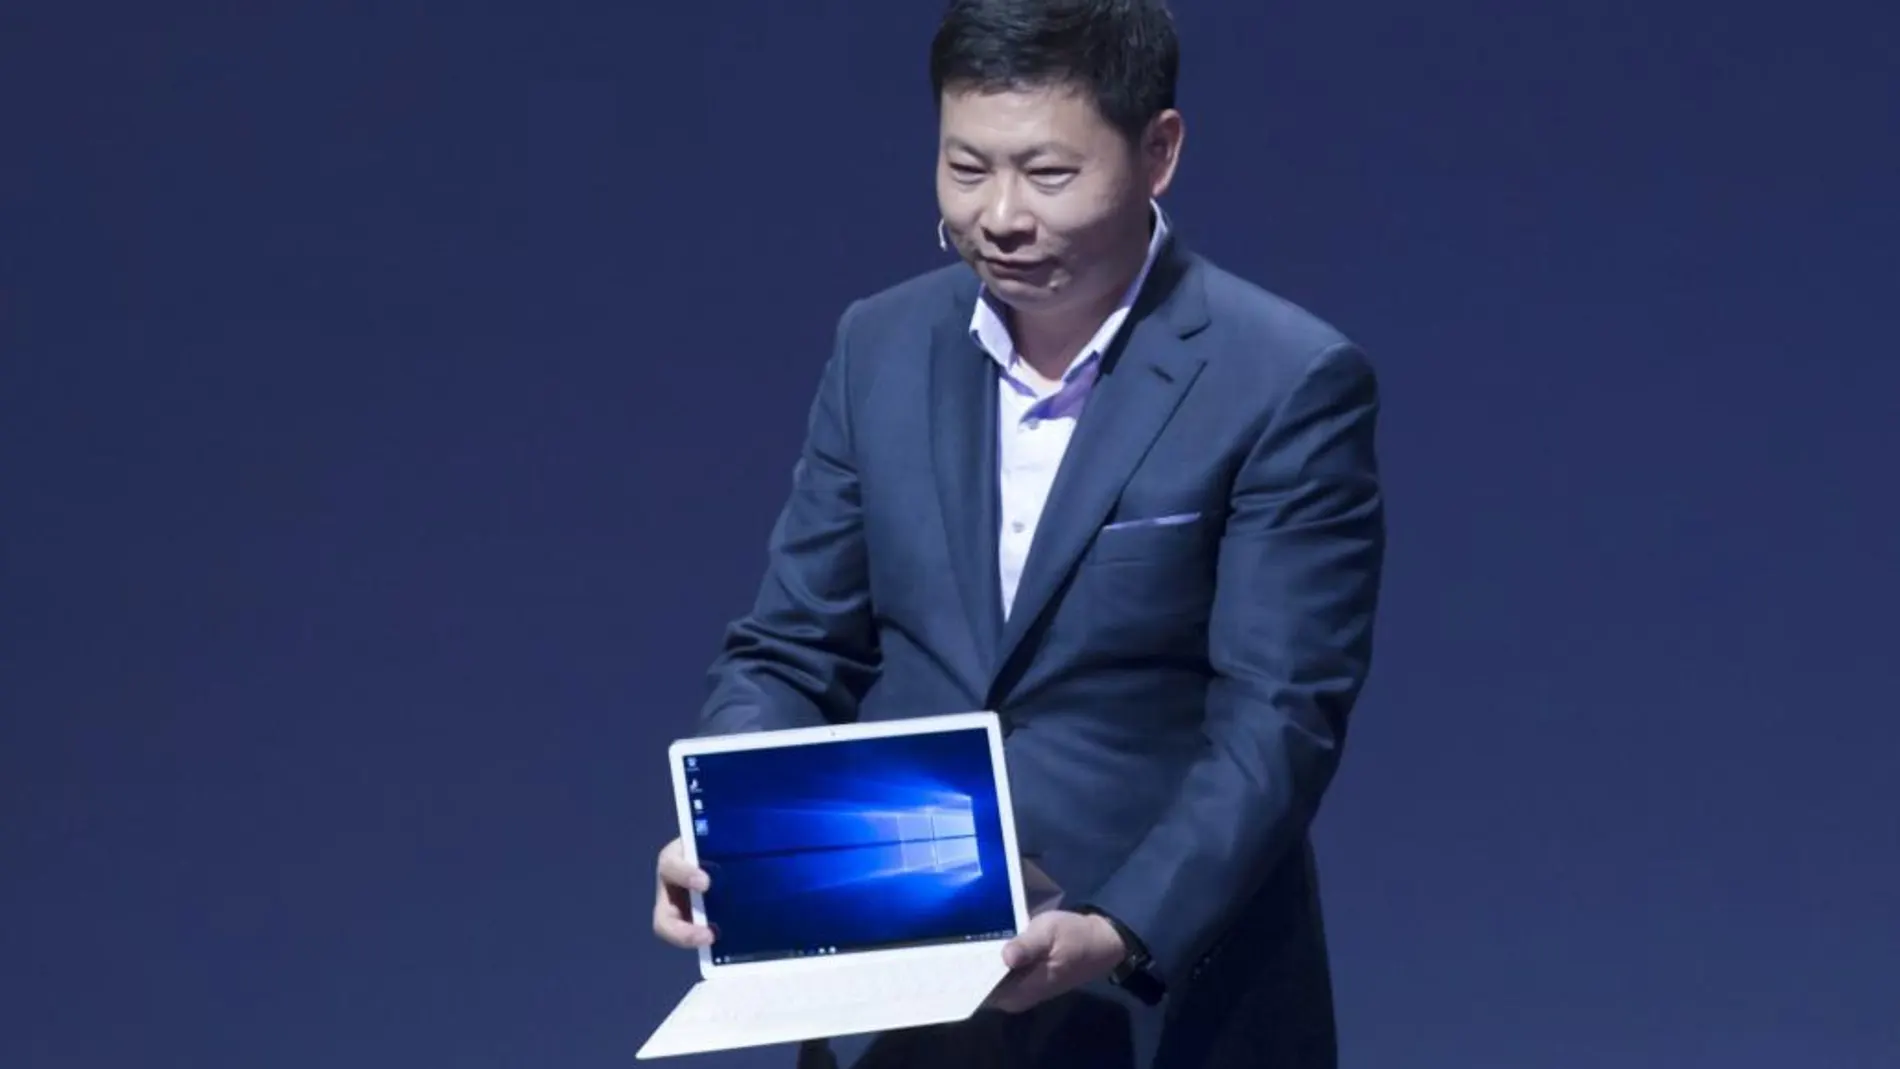 El consejero delegado de la compañía Huawei, Richard Yu, presenta el Matebook, un híbrido entre tableta y portátil con una pantalla de 12 pulgadas, con tecnología IPS LCD, y que funciona con Windows 10 como sistema operativo